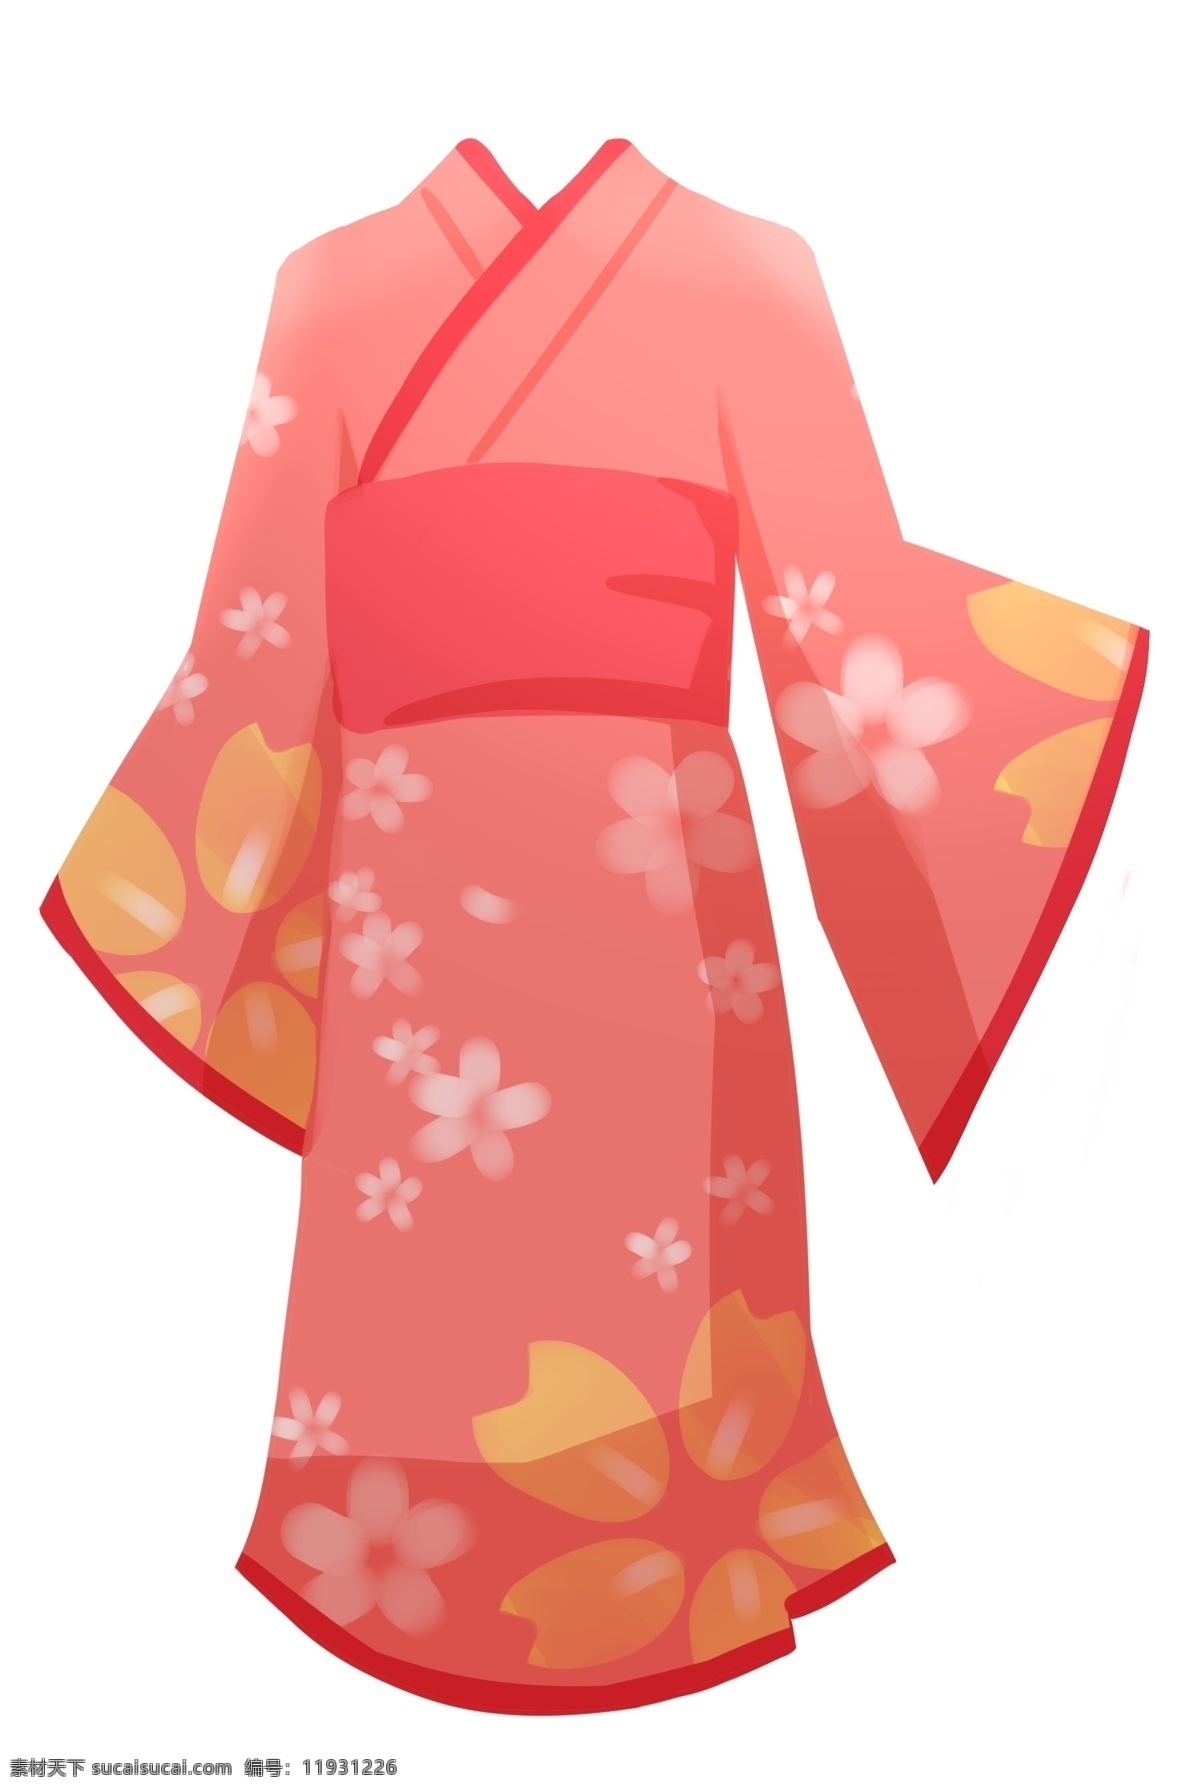 粉色 日本 裙子 插画 粉色的裙子 卡通插画 日本插画 日本产物 日本风情 日本物品 日本的裙子